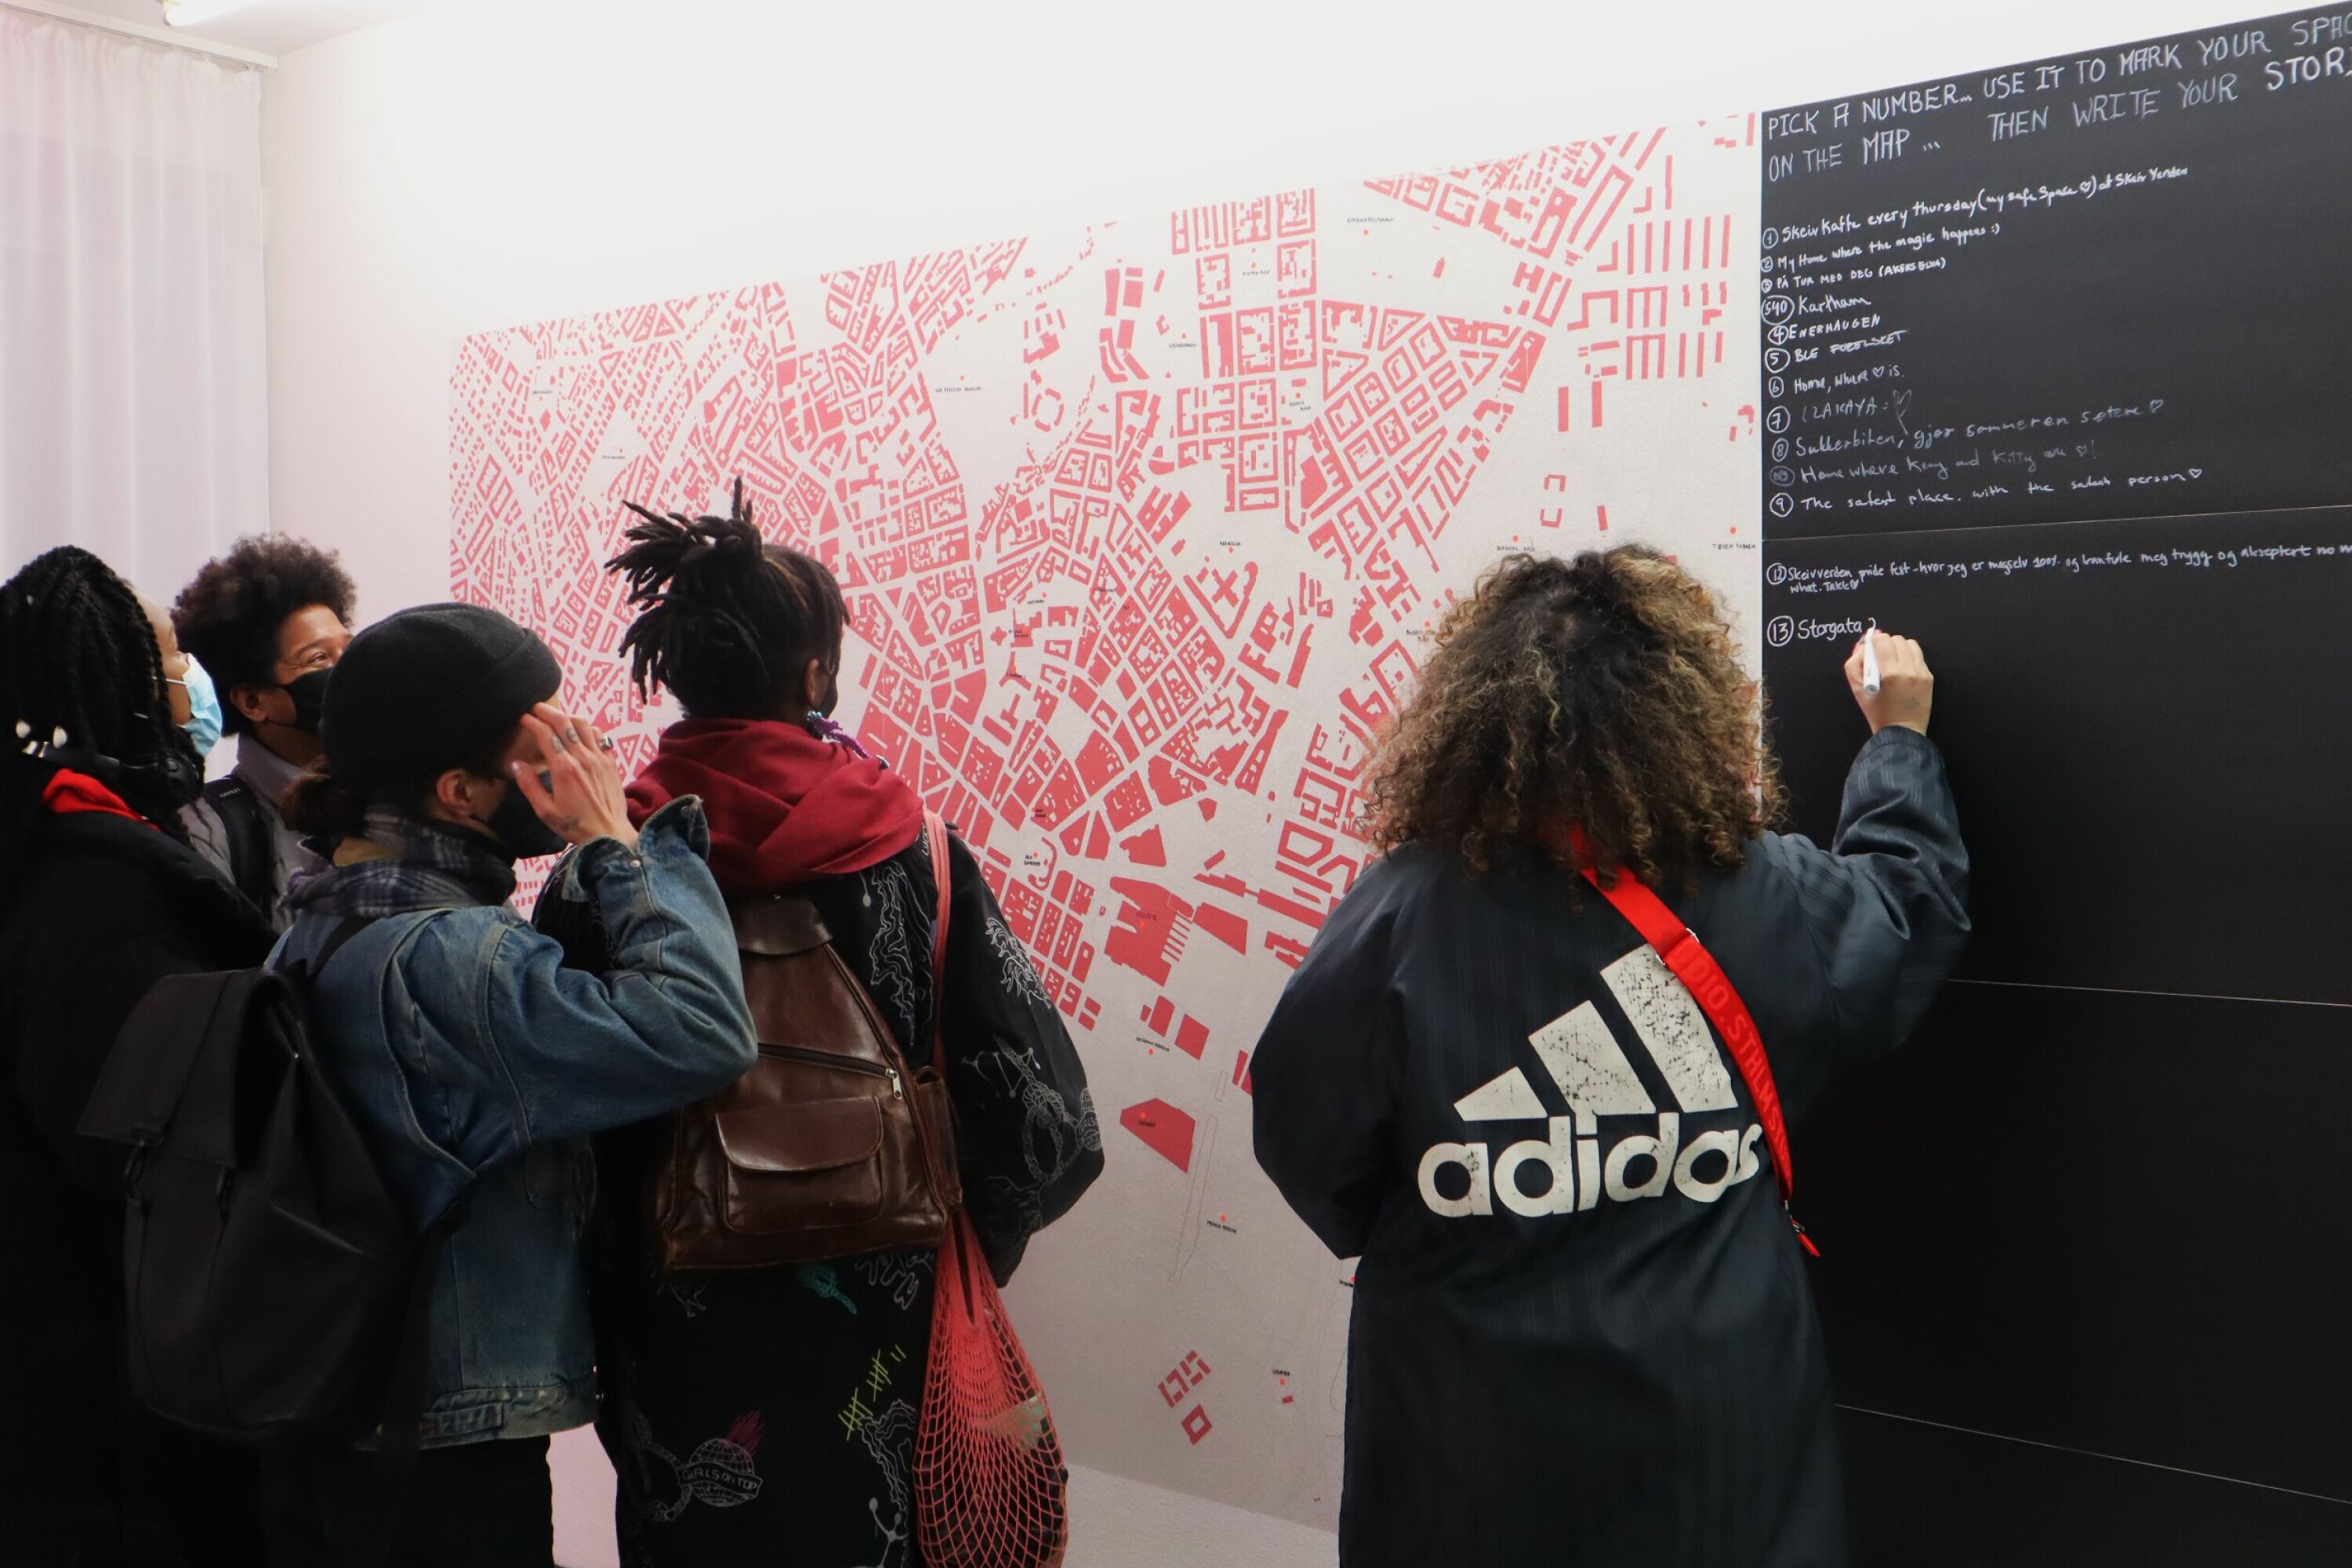 En vegg i utstillingen er viet til et kart over Oslo. Her inviteres besøkende til å skrive hvor i byen de føler seg trygge.